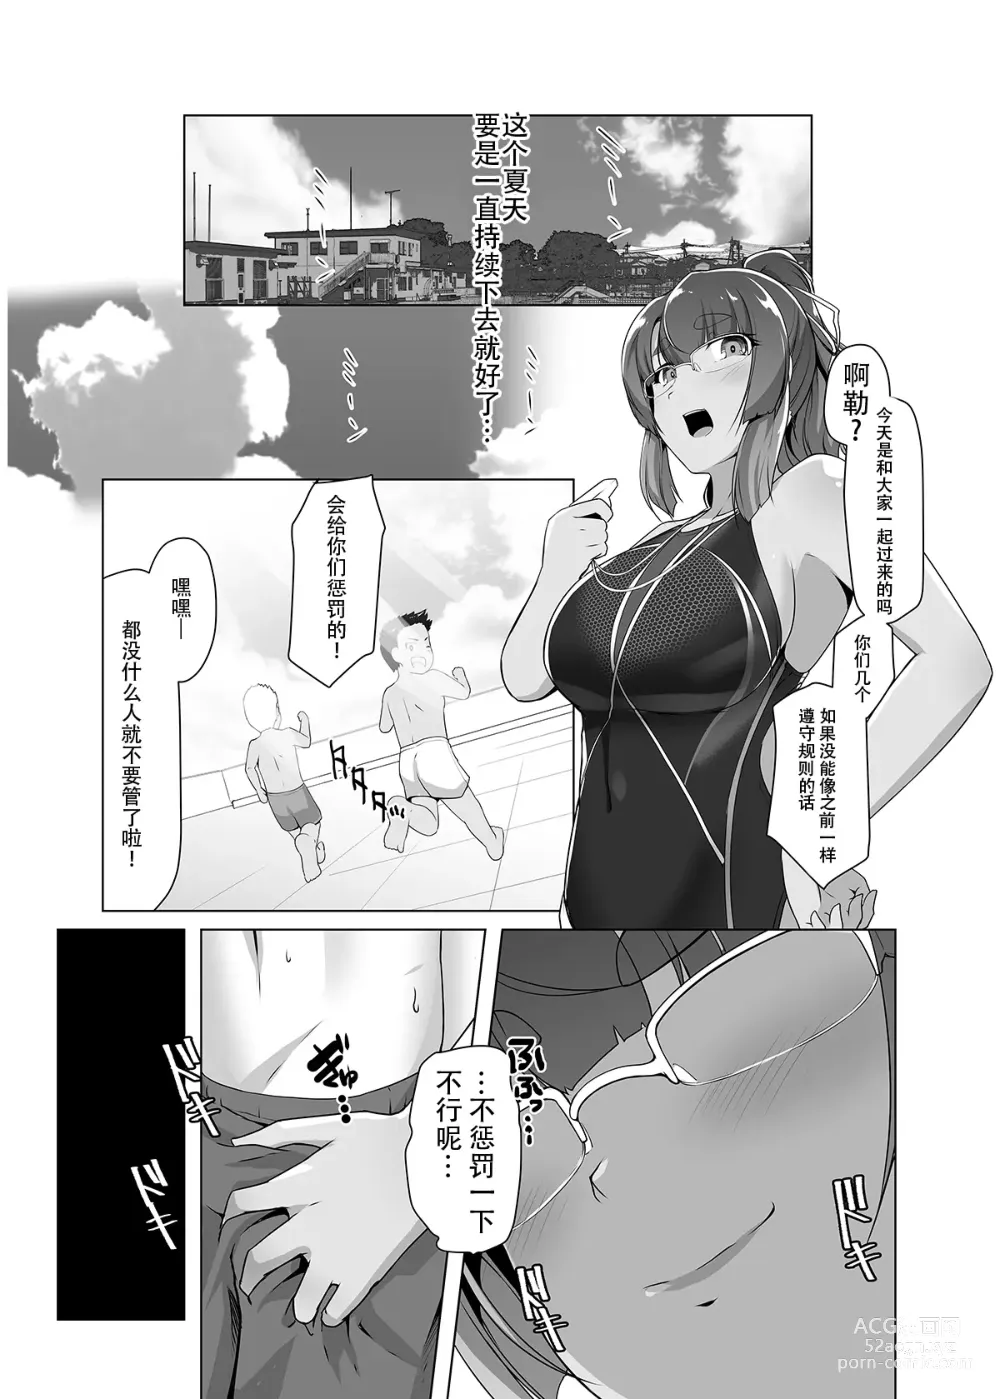 Page 24 of doujinshi Natsuzora no Misono-san - Ms. Misono and Summer Sky.